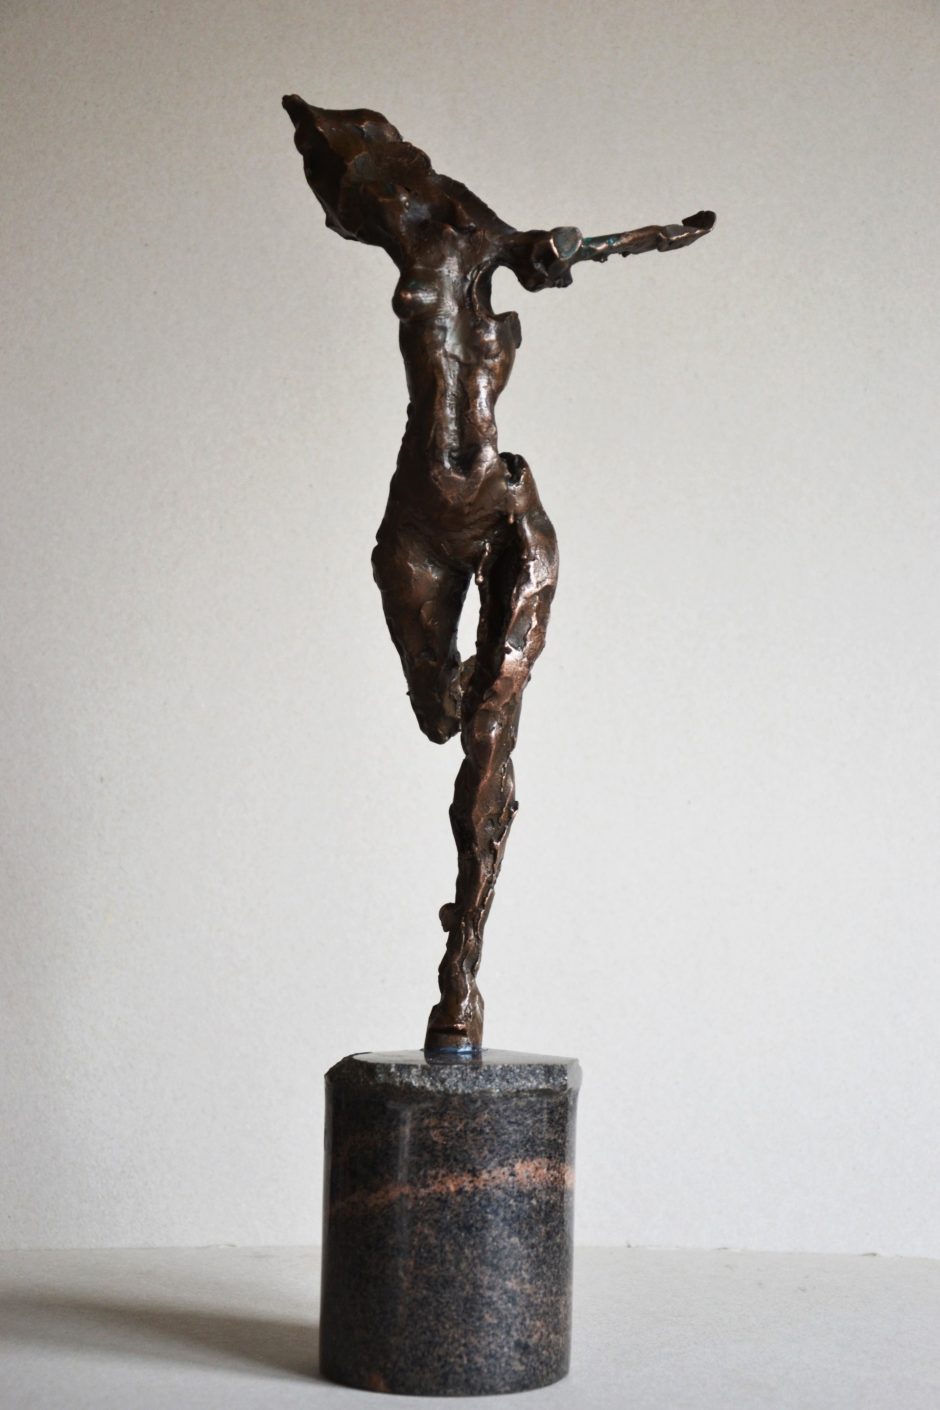 Klaipėdos galerijoje – mažosios skulptūrinės formos paroda „Bronzos amžius“